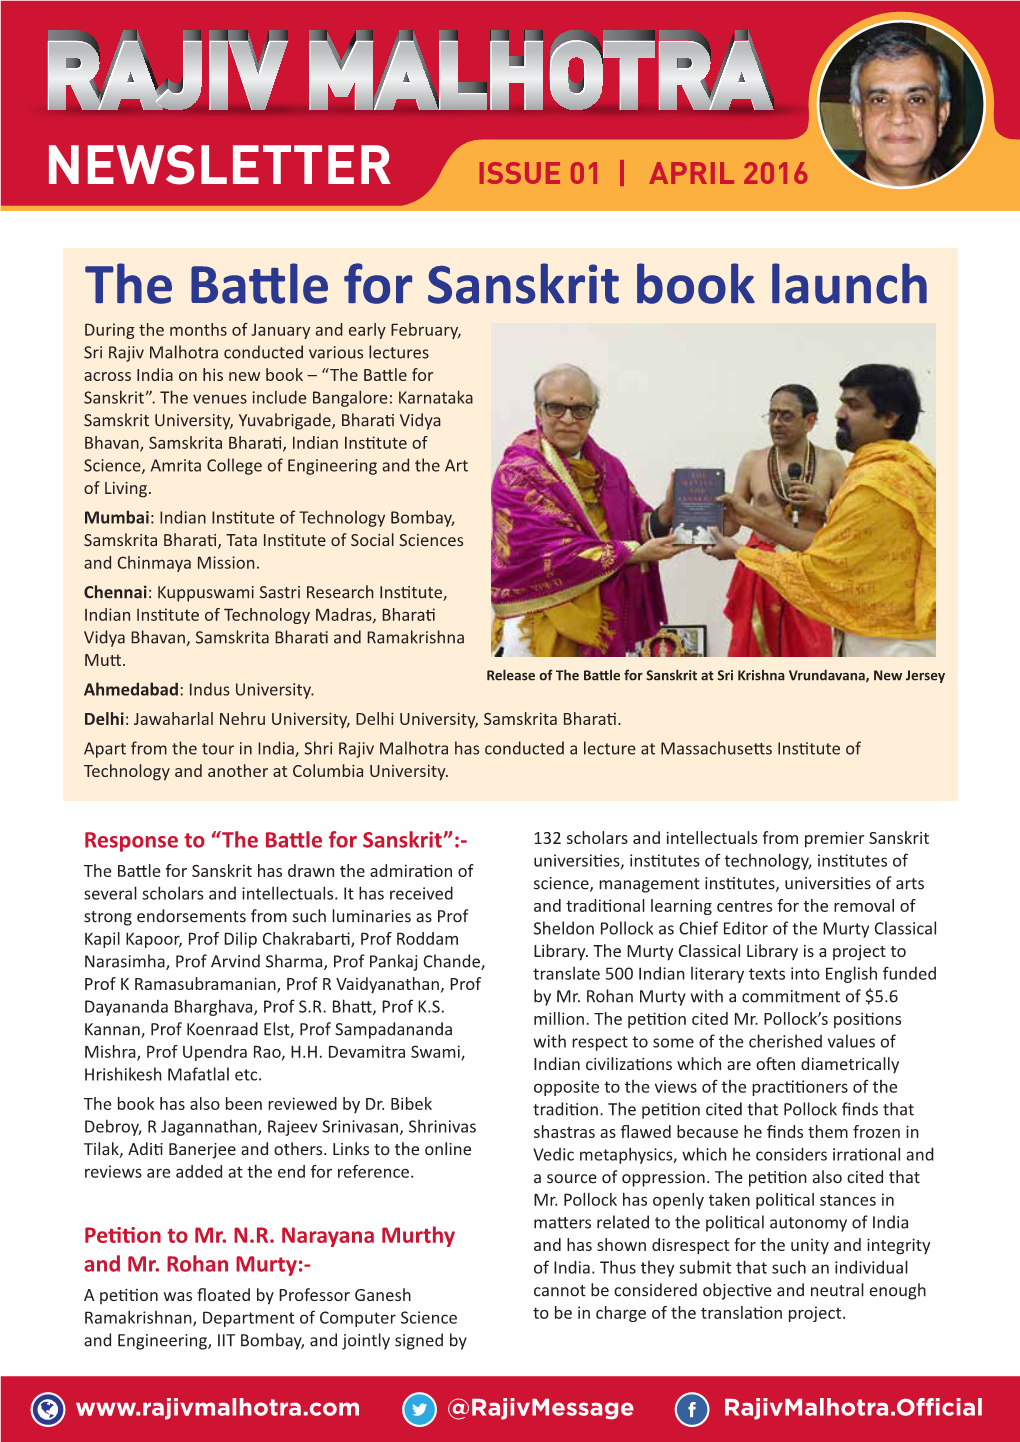 The Battle for Sanskrit Book Launch